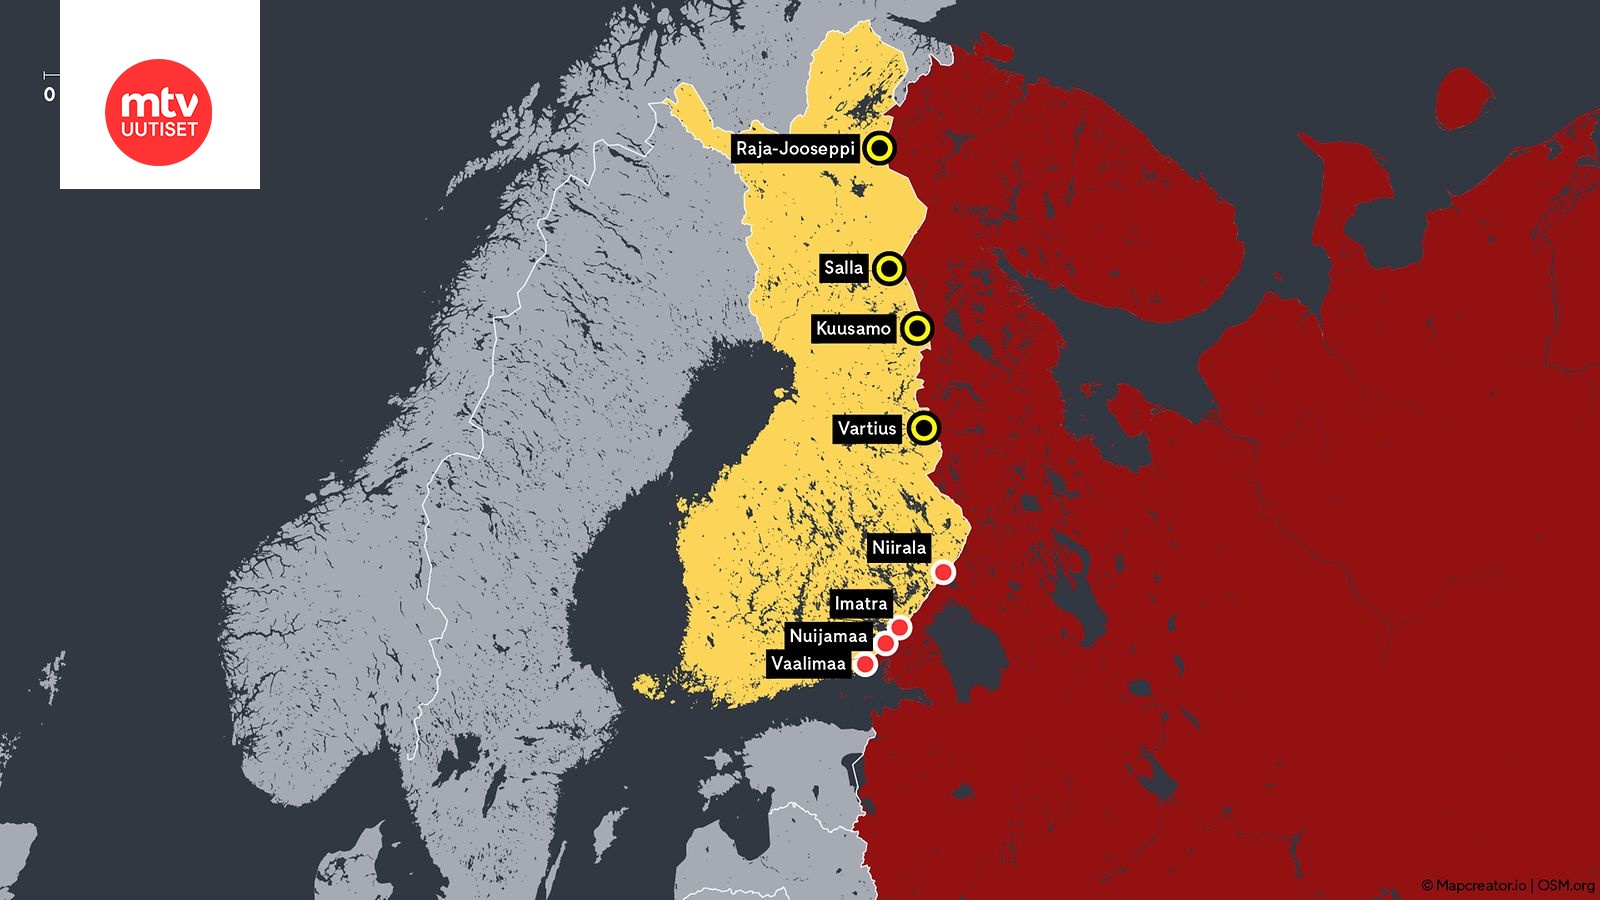 katso-kartalta-n-in-pohjoisin-suljettava-raja-asema-sijoittuu-suomen